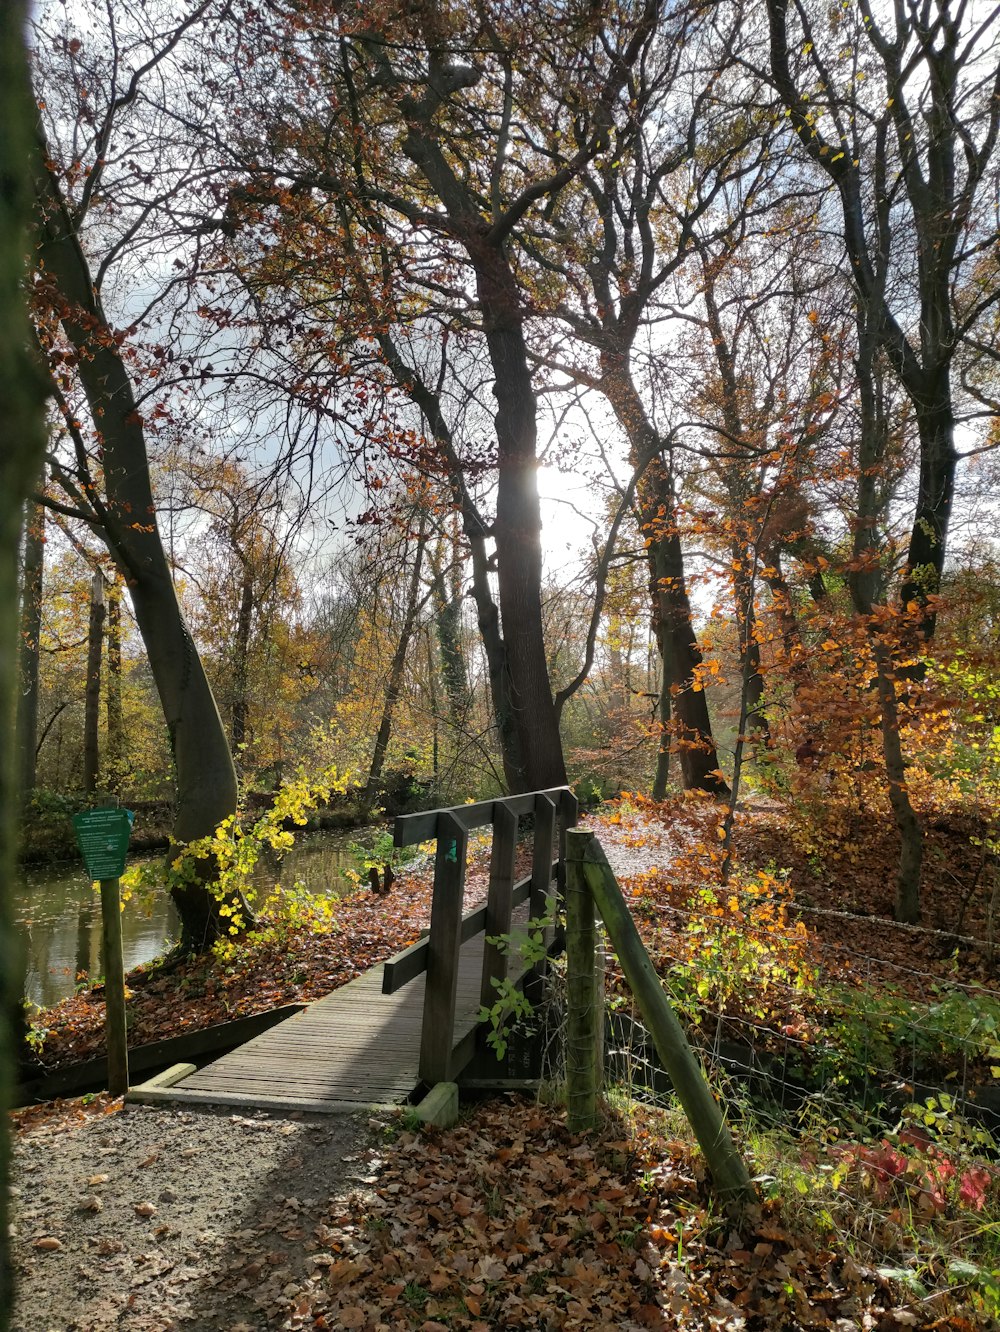 Un ponte di legno su un fiume circondato da alberi